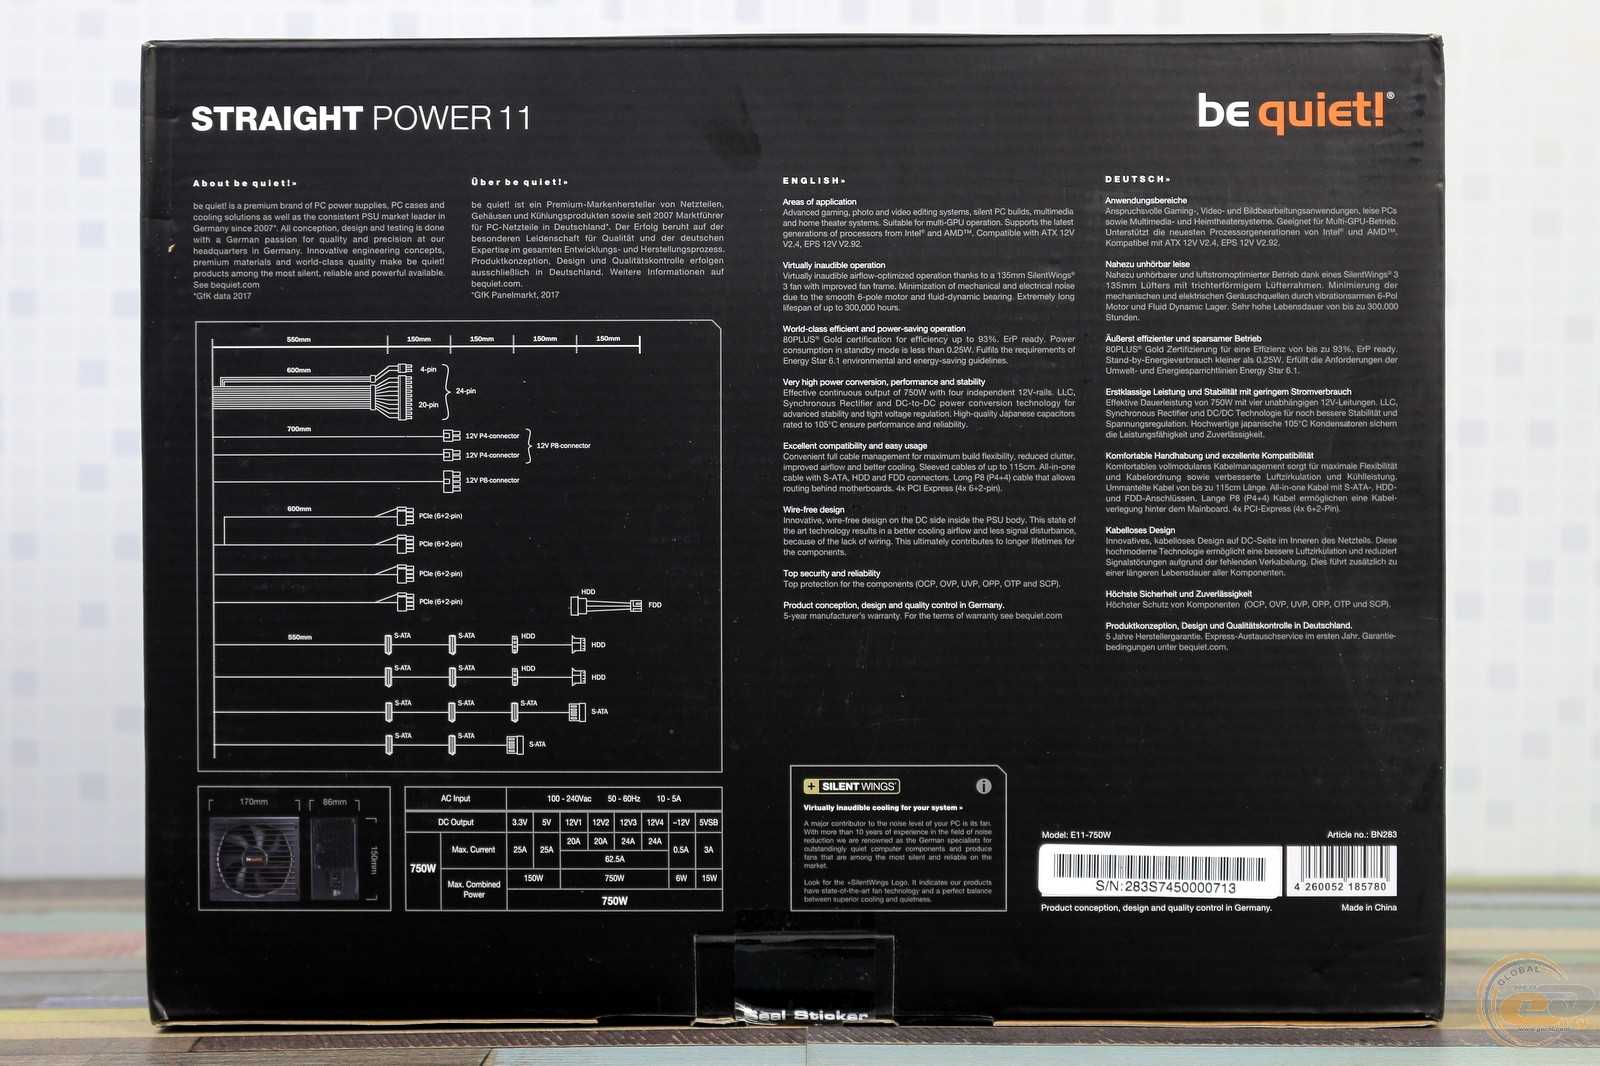 Тест и обзор: be quiet! straight power 11 550w и 850w - обновленные блоки питания 80 plus gold